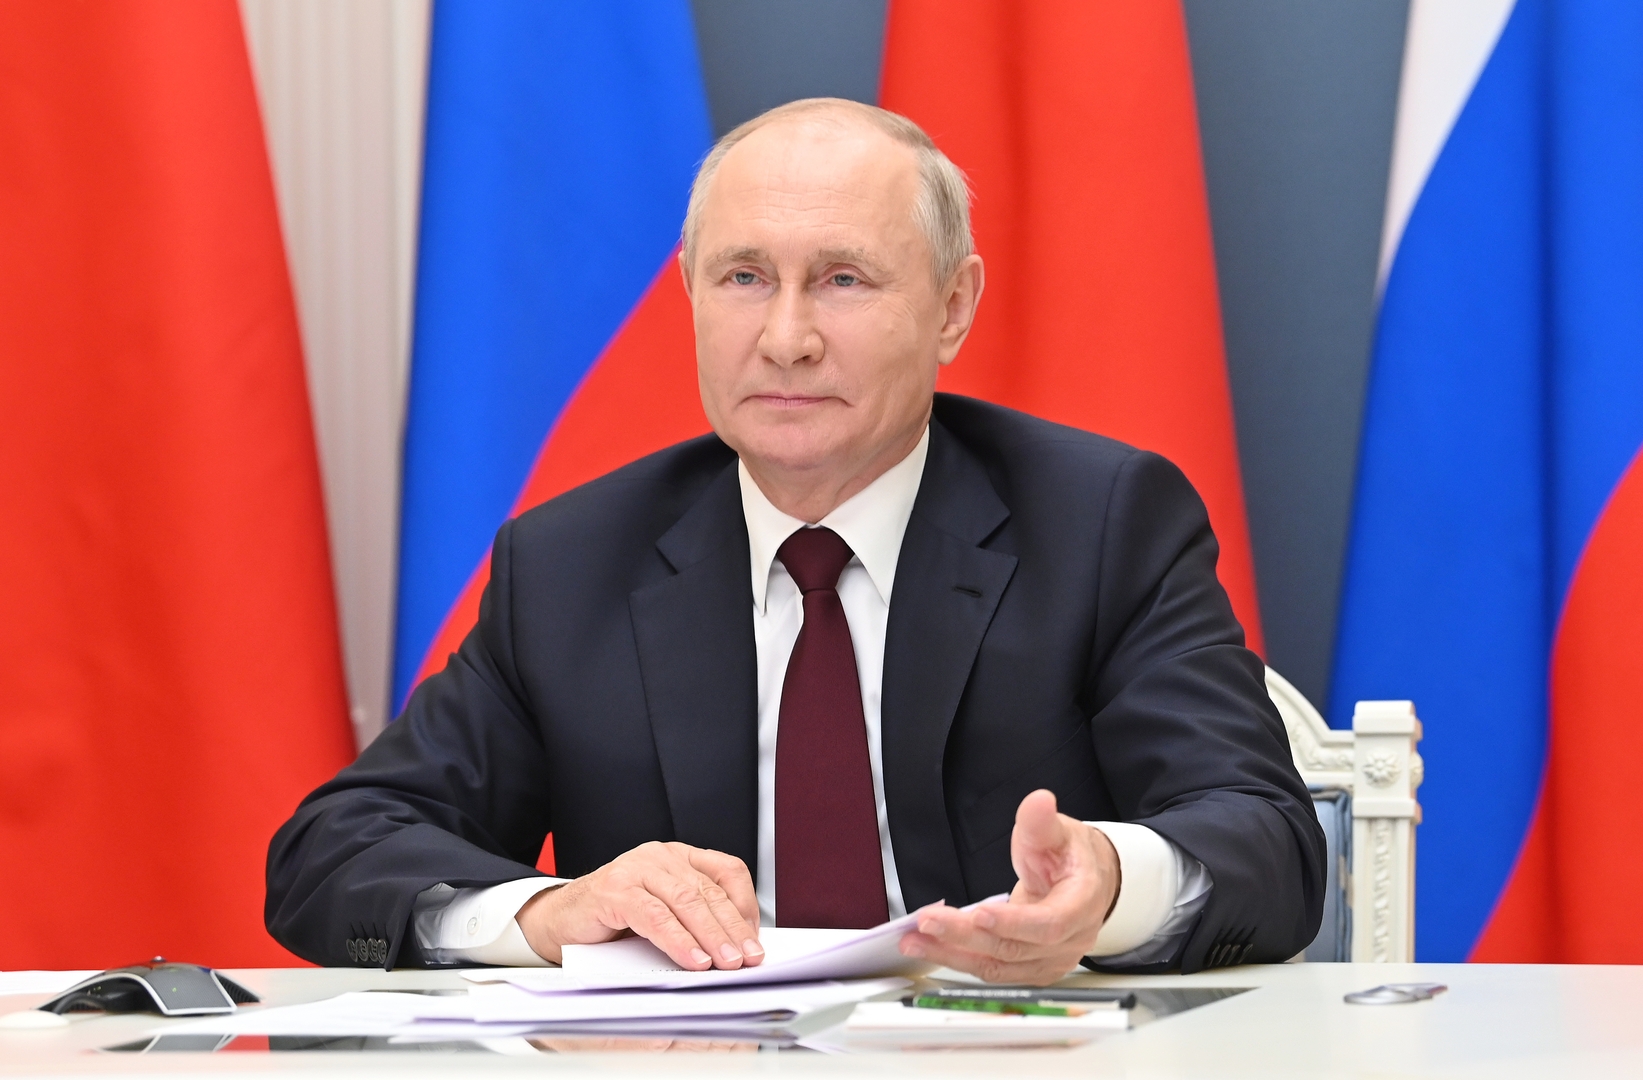 بوتين: روسيا والصين تلعبان دورا هاما في استقرار العالم